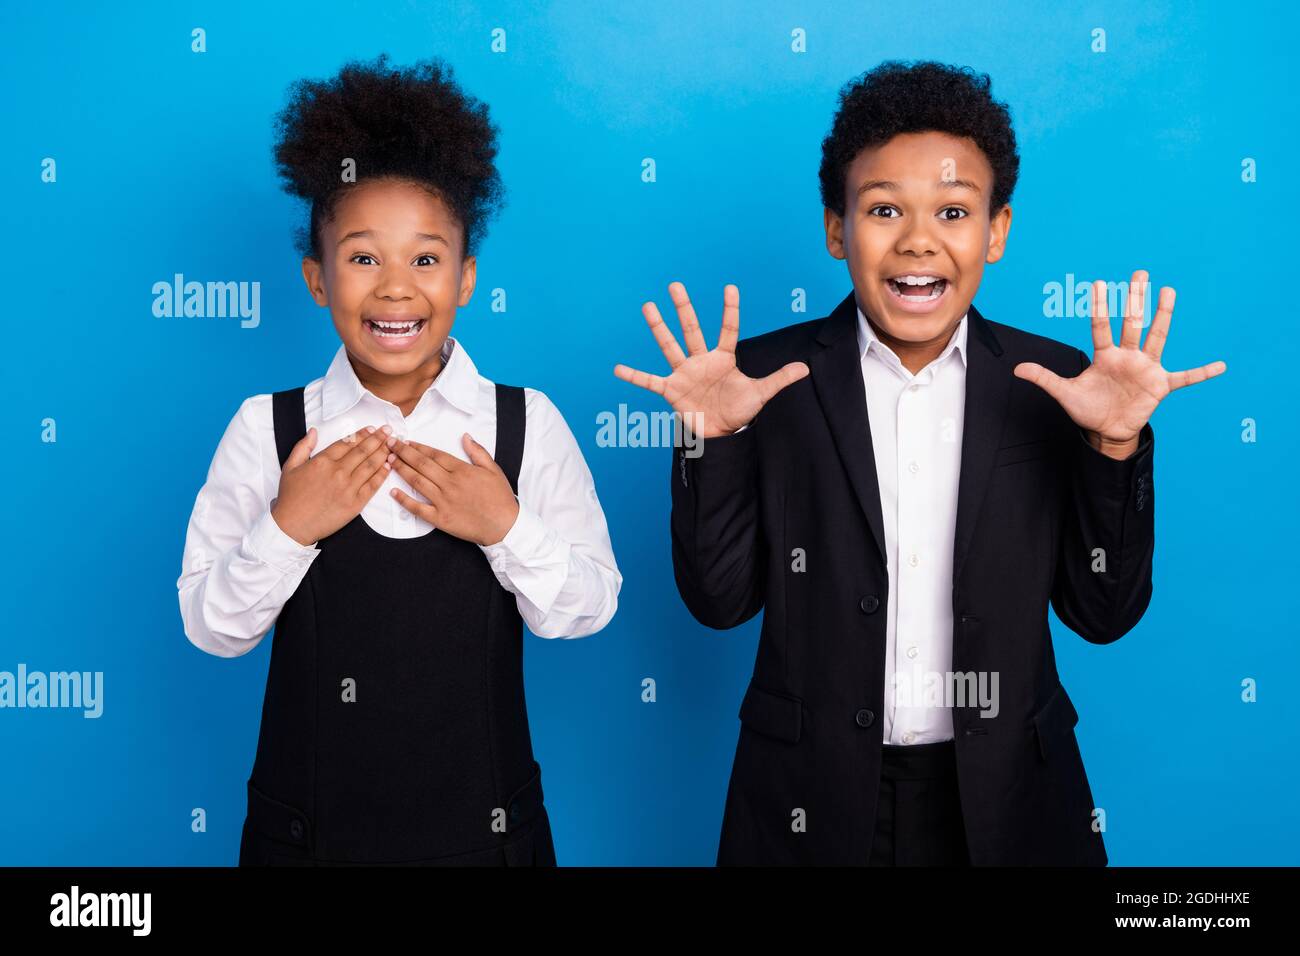 Foto von glücklich erstaunt fröhlich afro amerikanischen Kindern gute Laune schockiert isoliert auf blauem Hintergrund Stockfoto